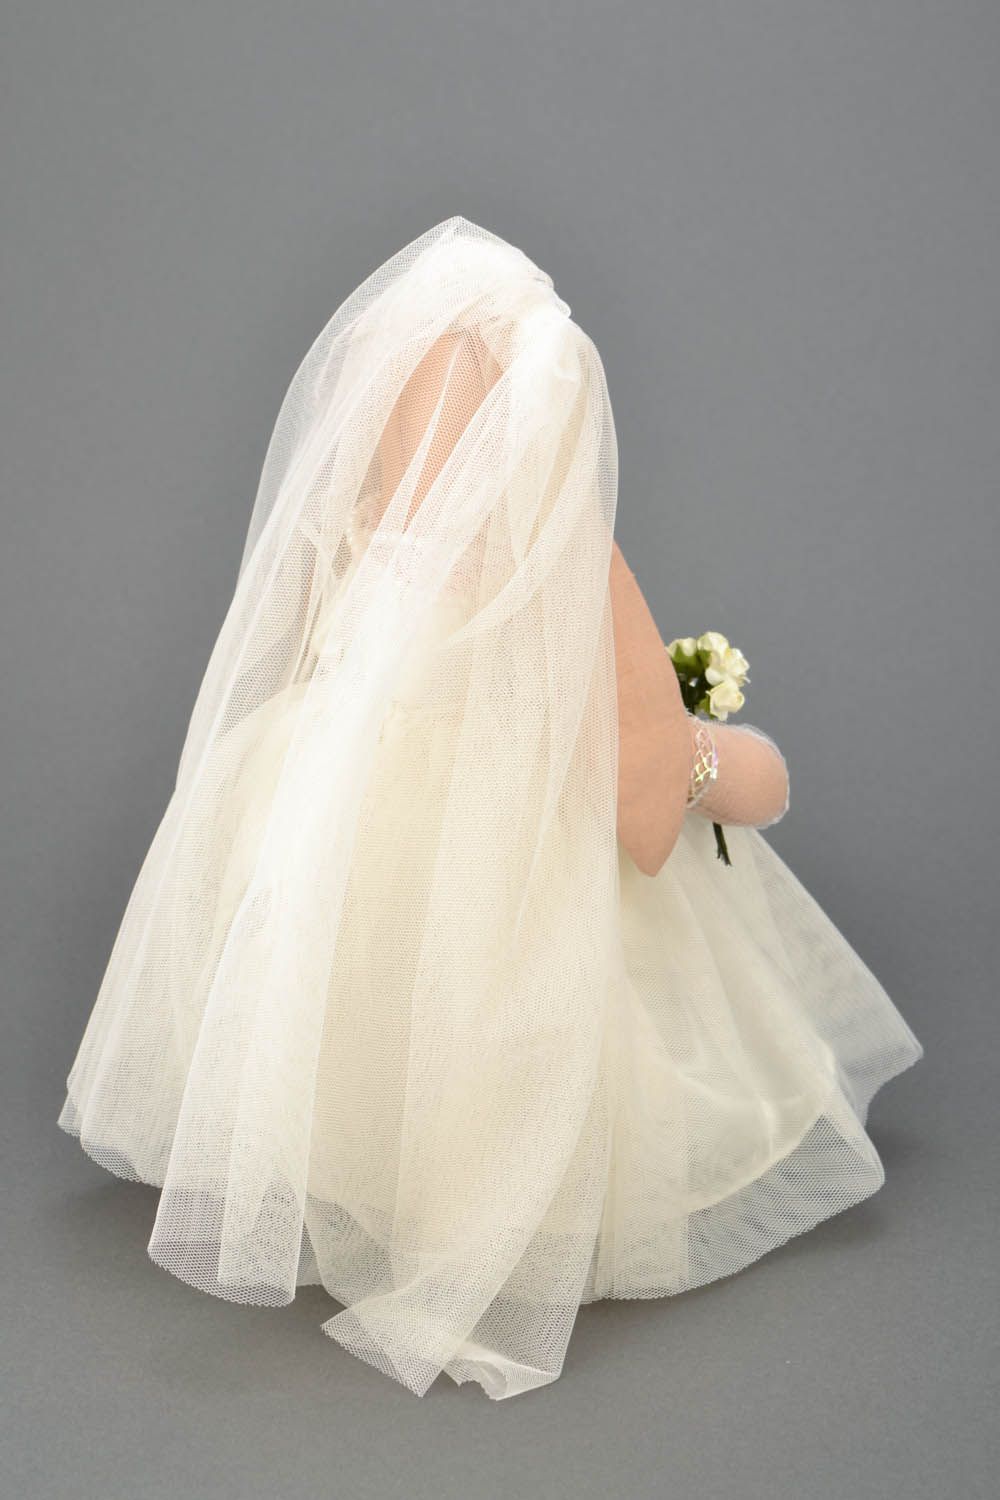 Интерьерная игрушка текстильная Зайкина невеста фото 2